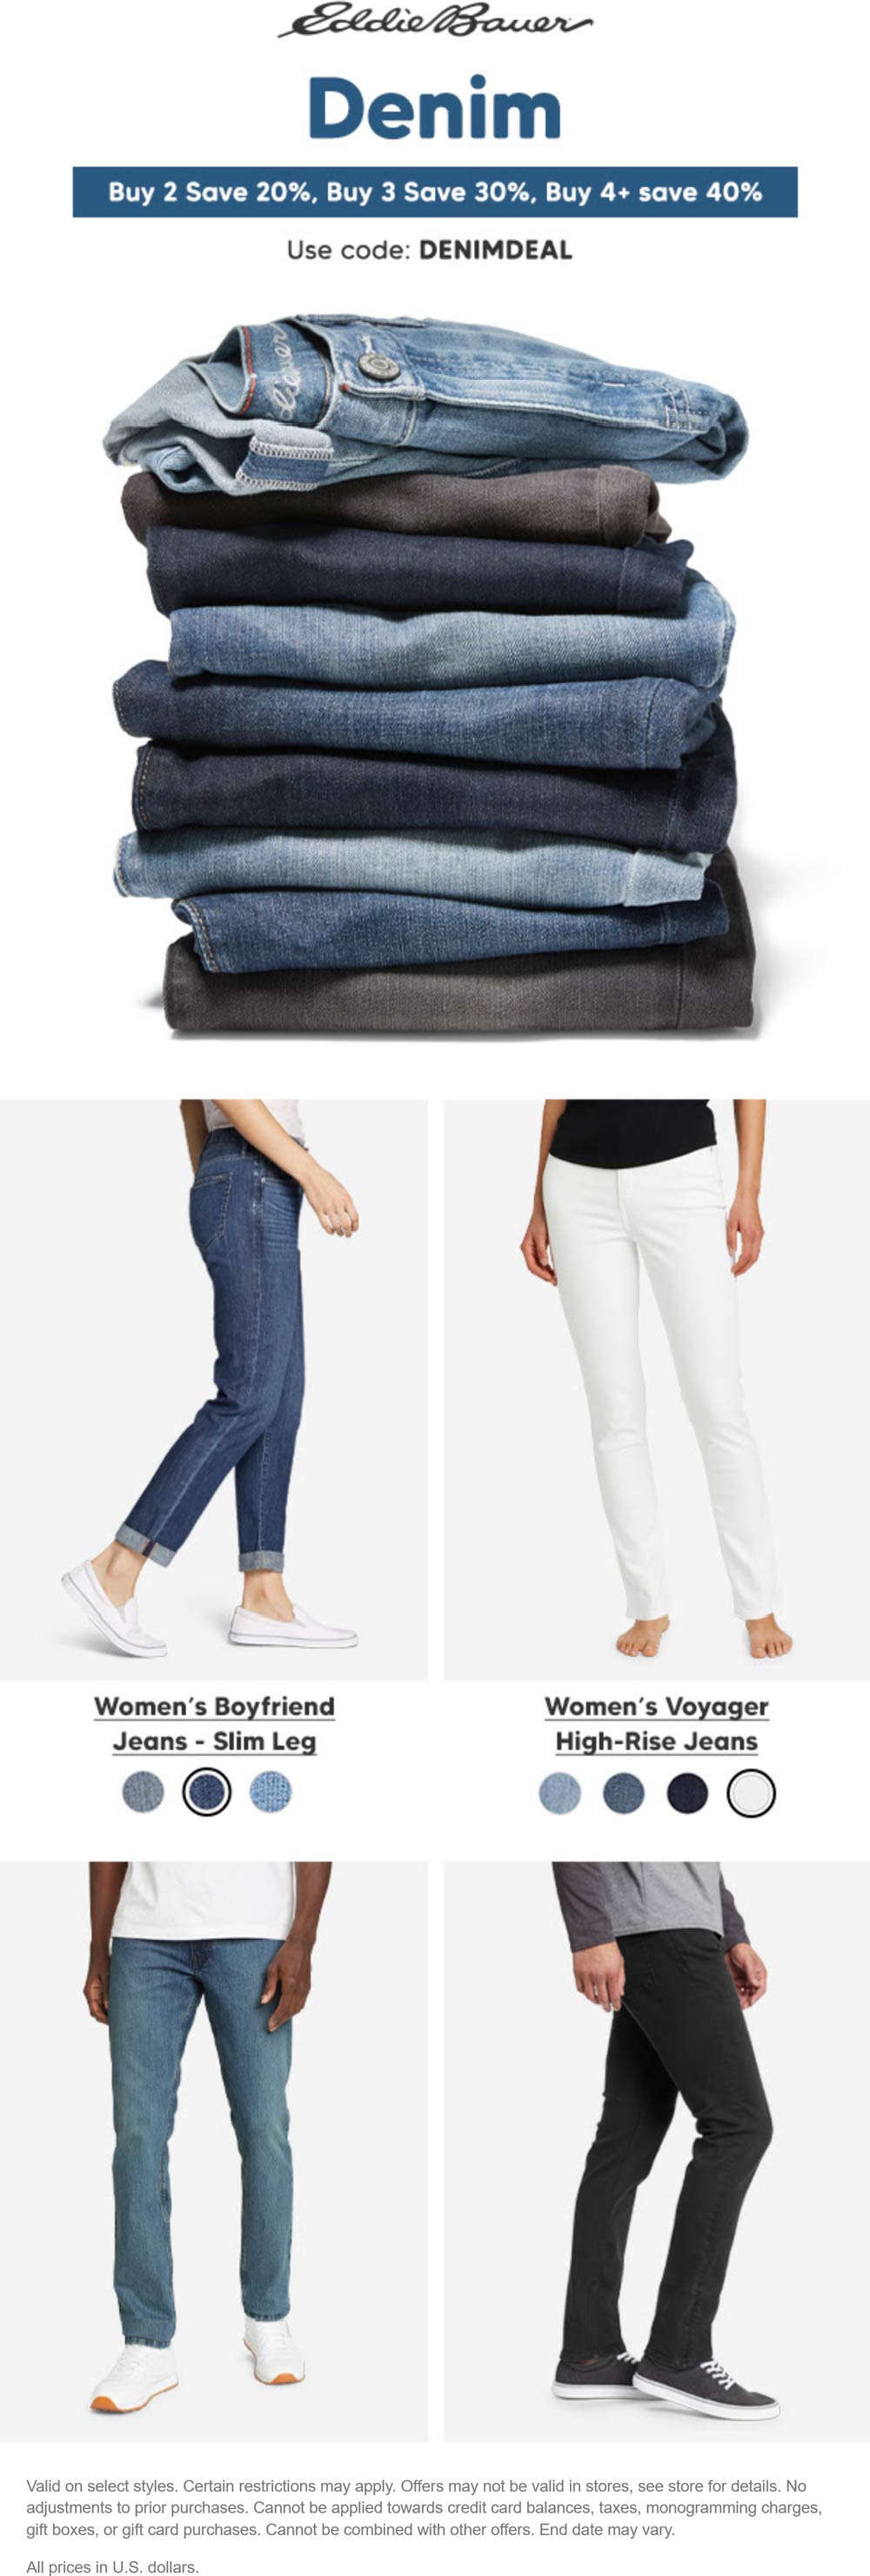 Eddie Bauer stores Coupon  20-40% off jeans at Eddie Bauer, or online via promo code DENIMDEAL #eddiebauer 